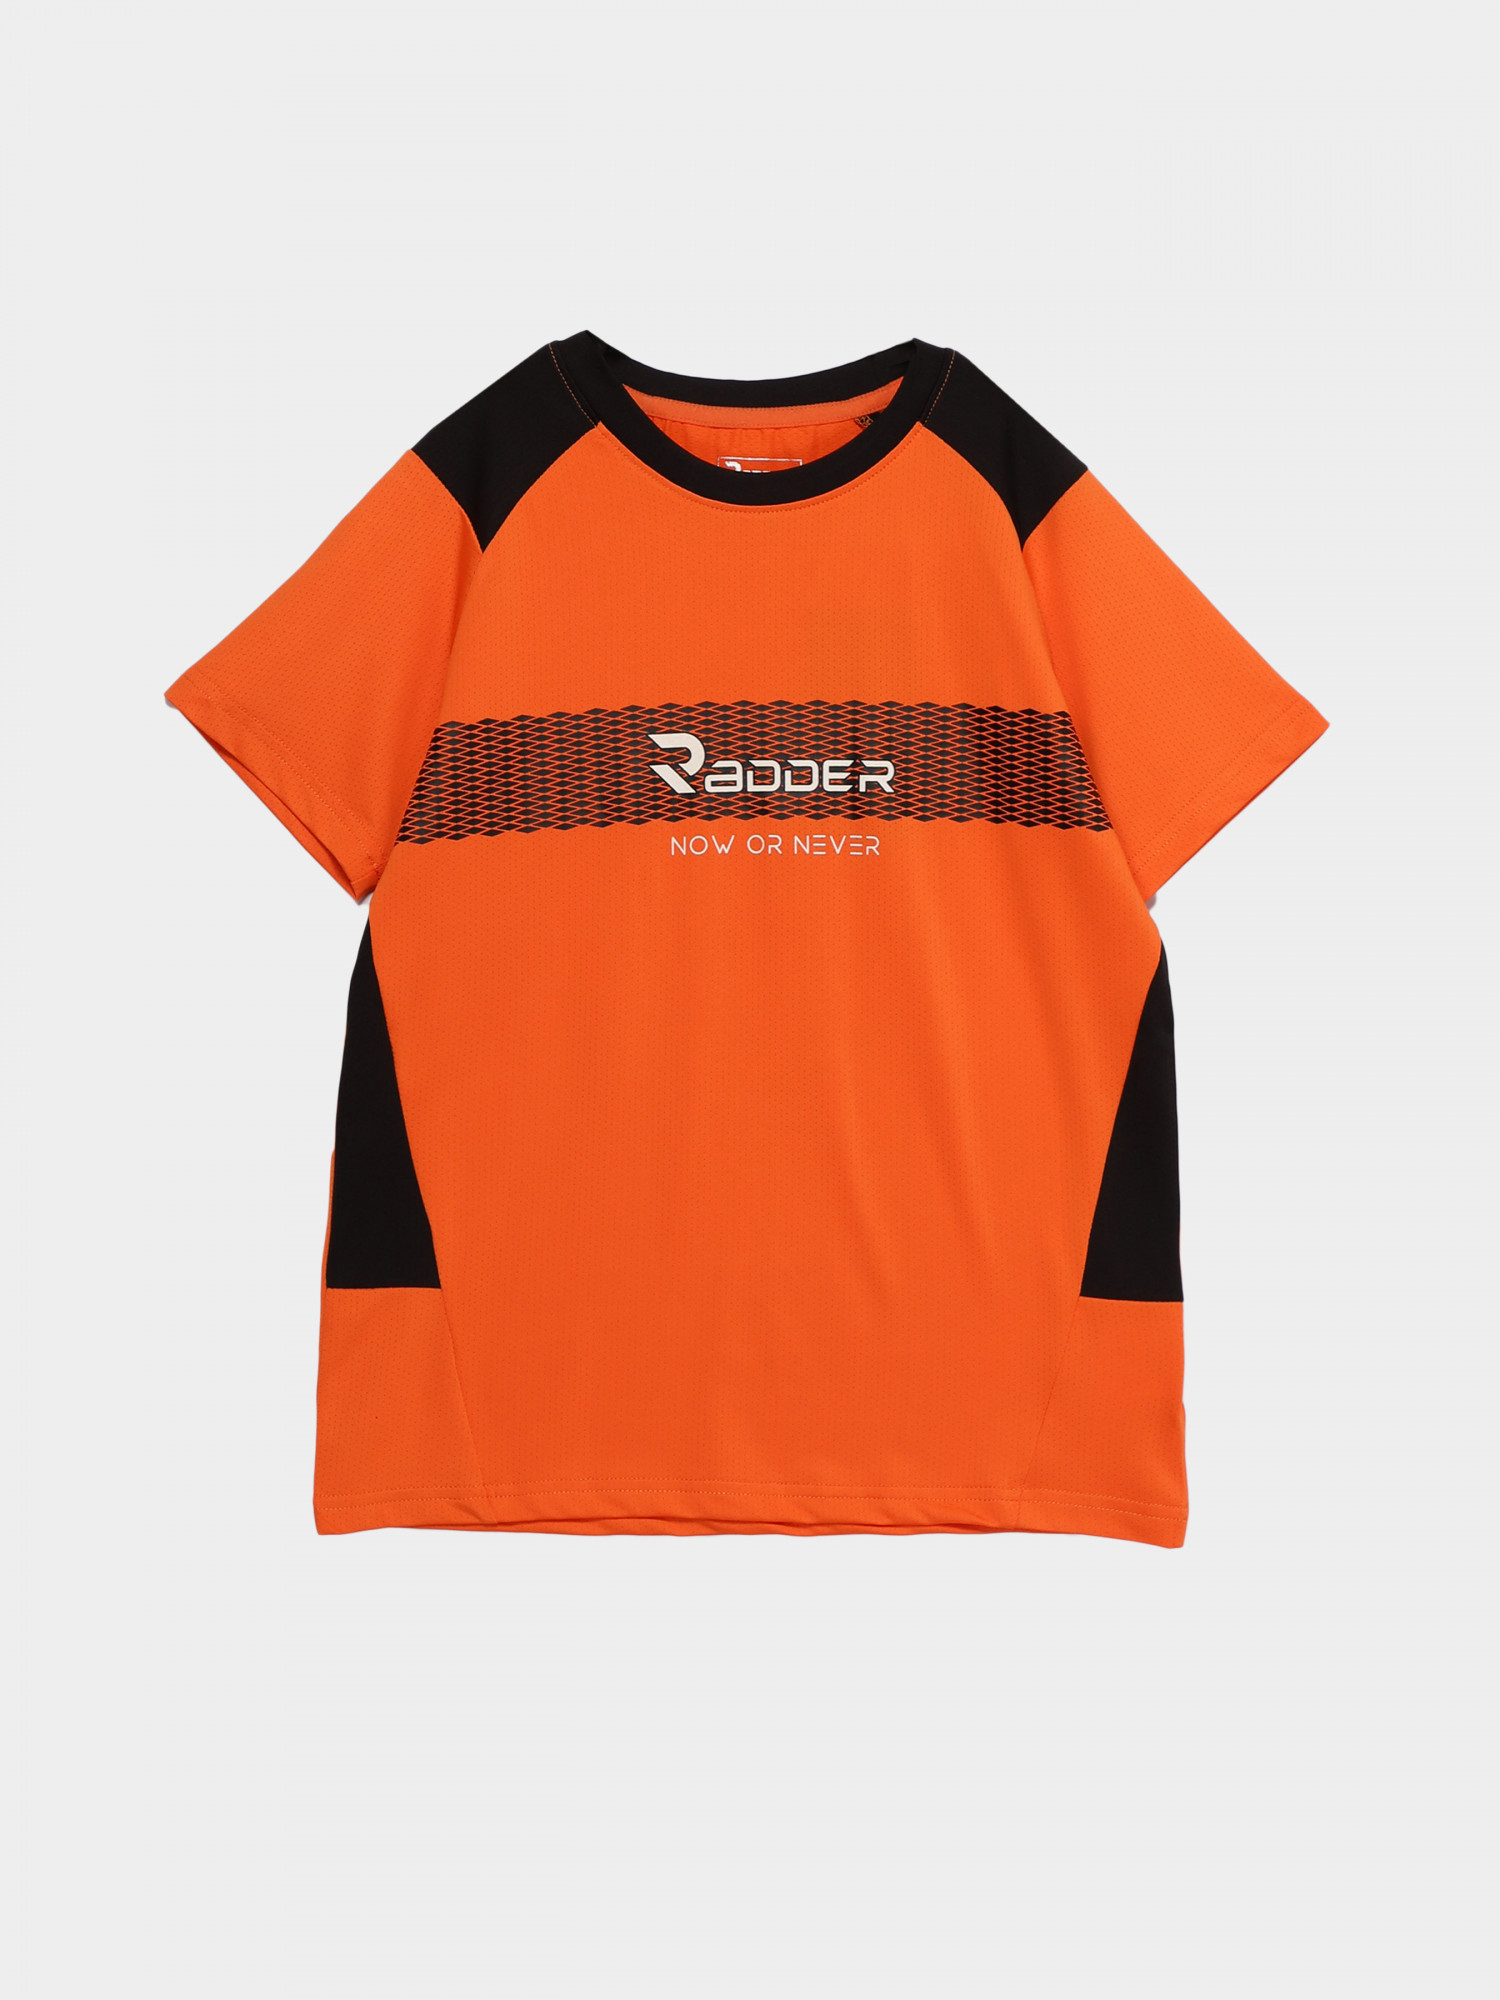 Футболка для мальчика Radder Roan оранжевая 442367-840 изображение 2